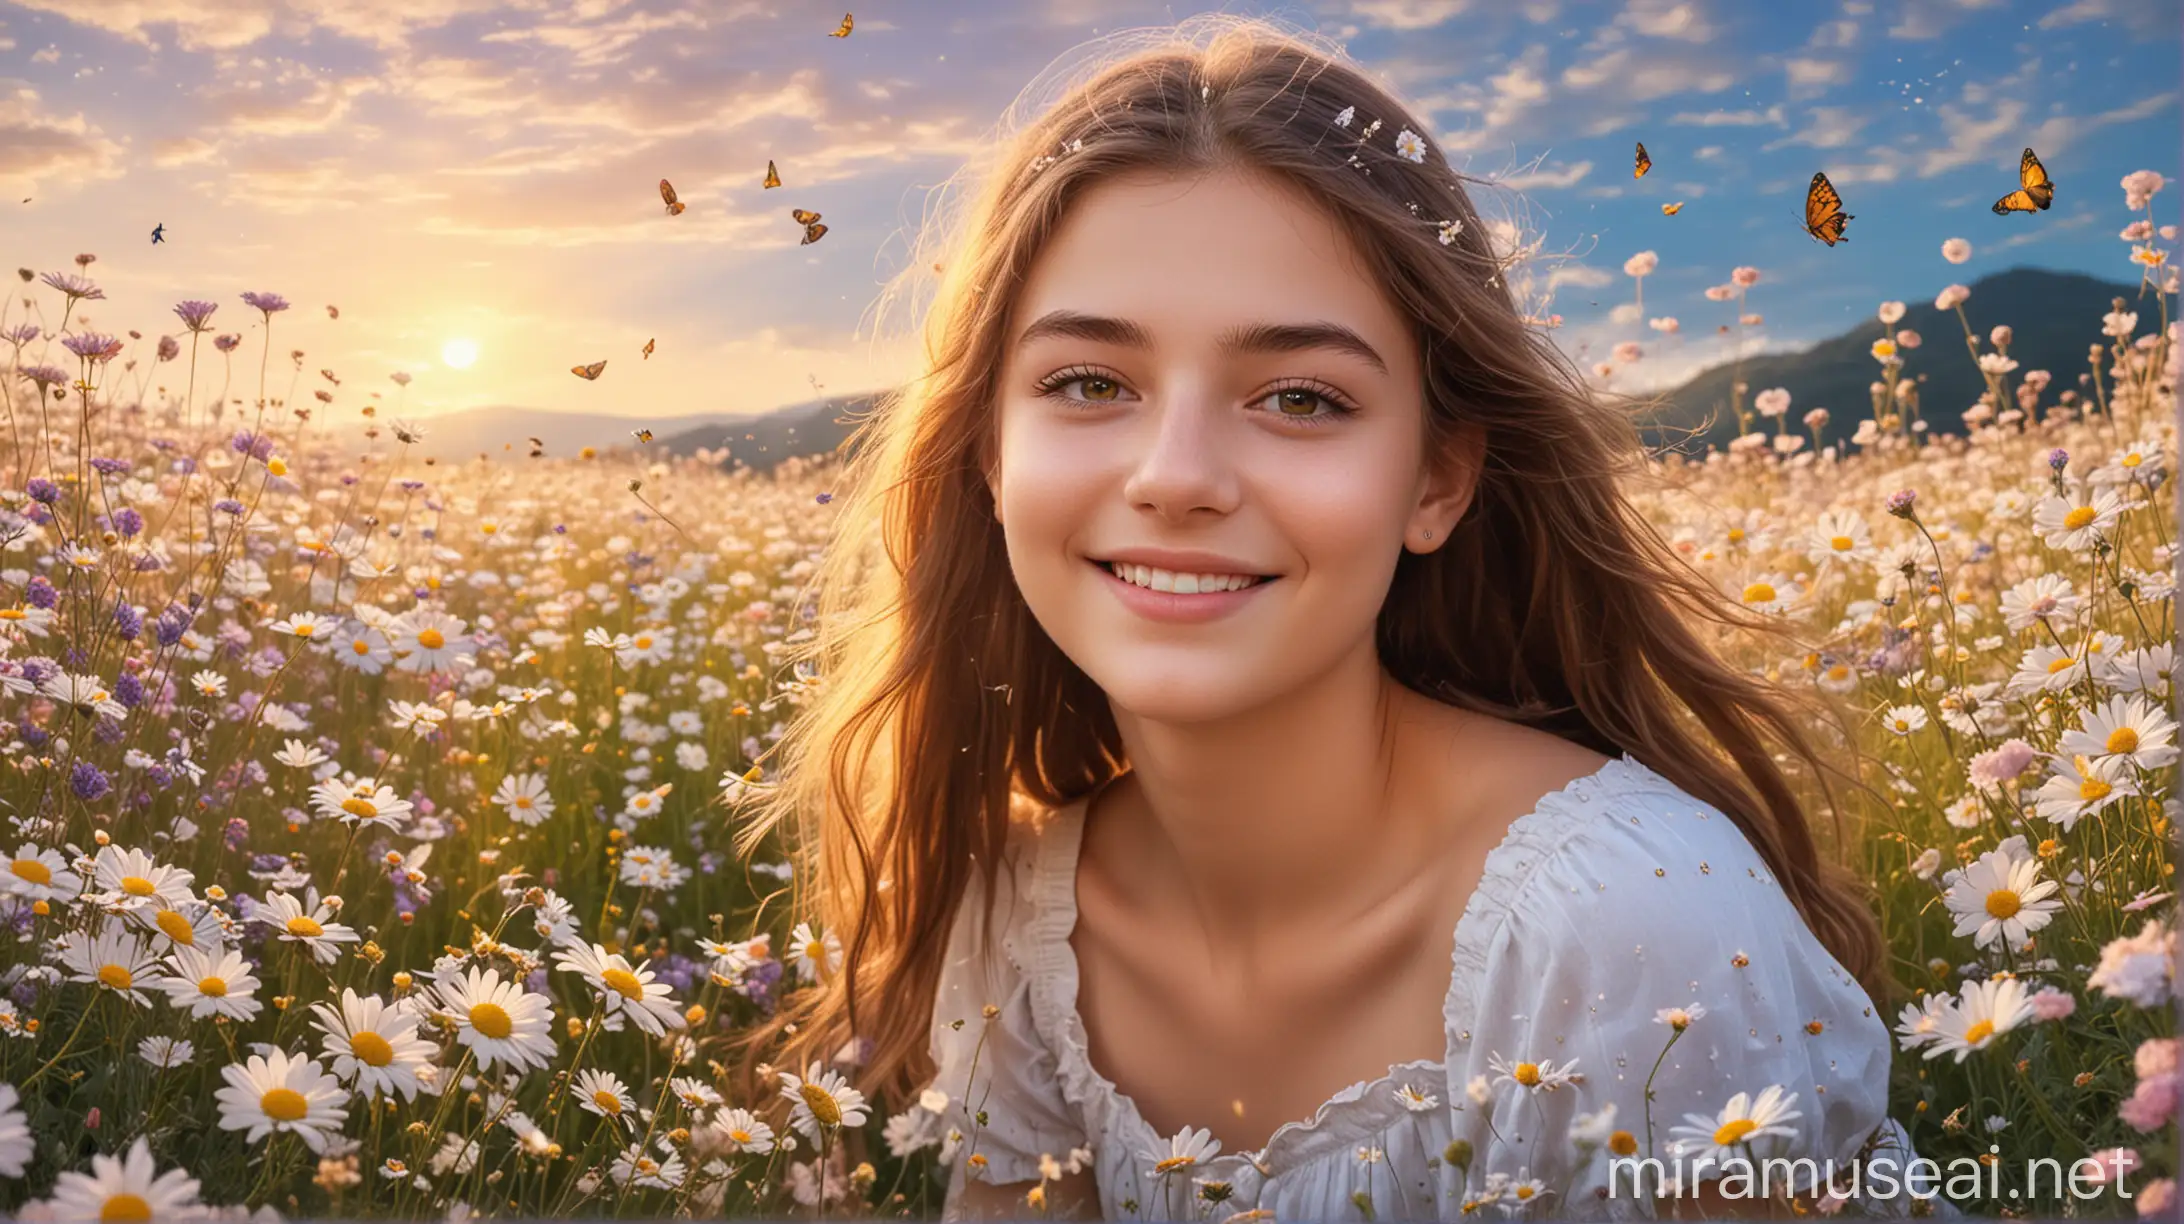 Radiant 18YearOld Girl in Dreamy Flower Field